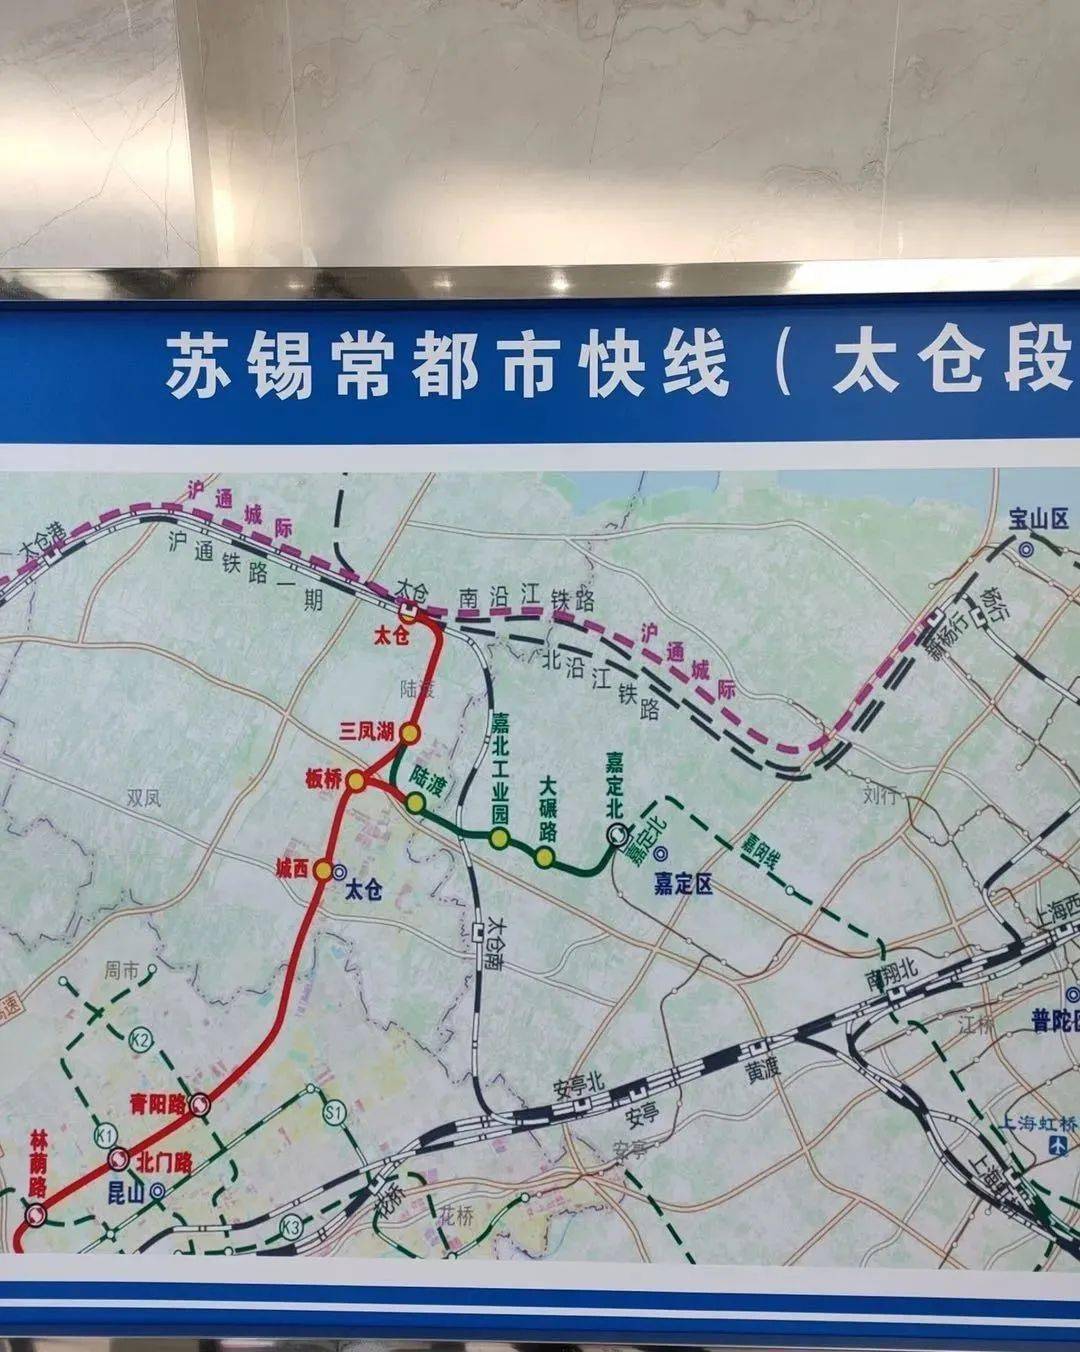 嘉闵线建成后,太仓无论是高铁,地铁还是公路交通上彻底与上海相融